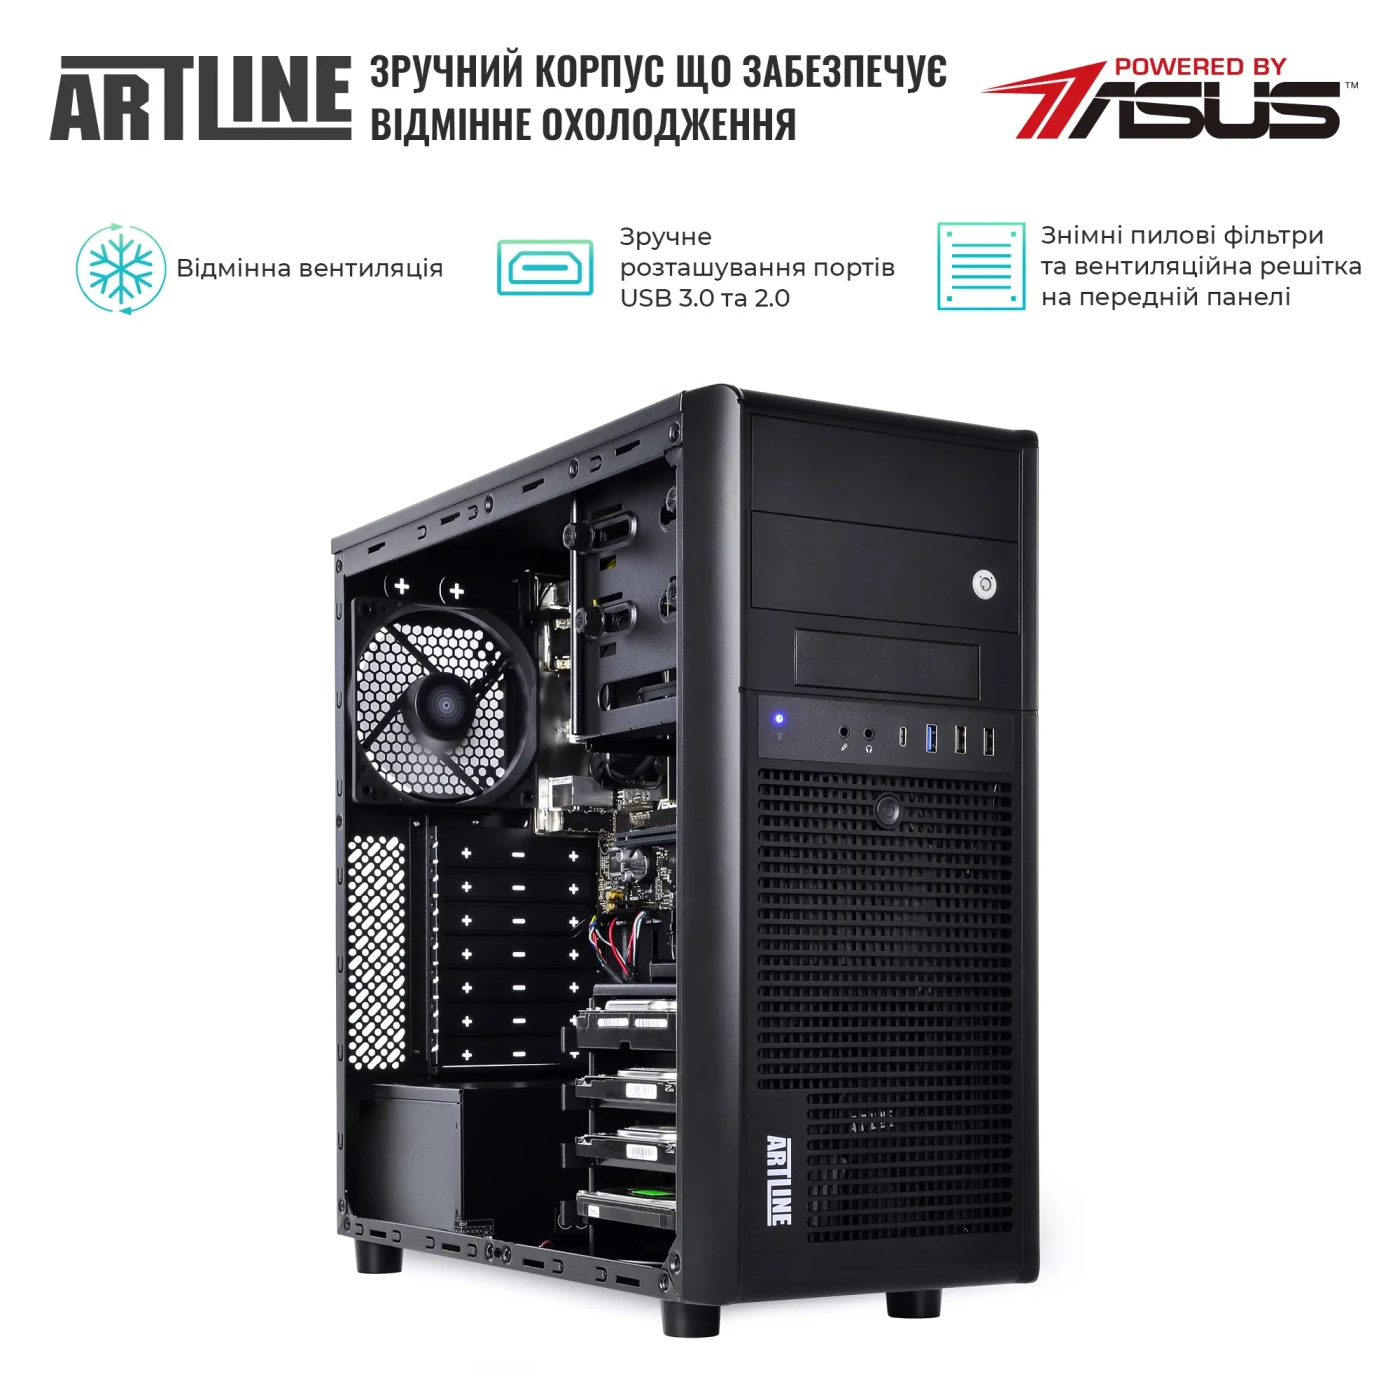 Купить Сервер ARTLINE Business T35v15 - фото 3